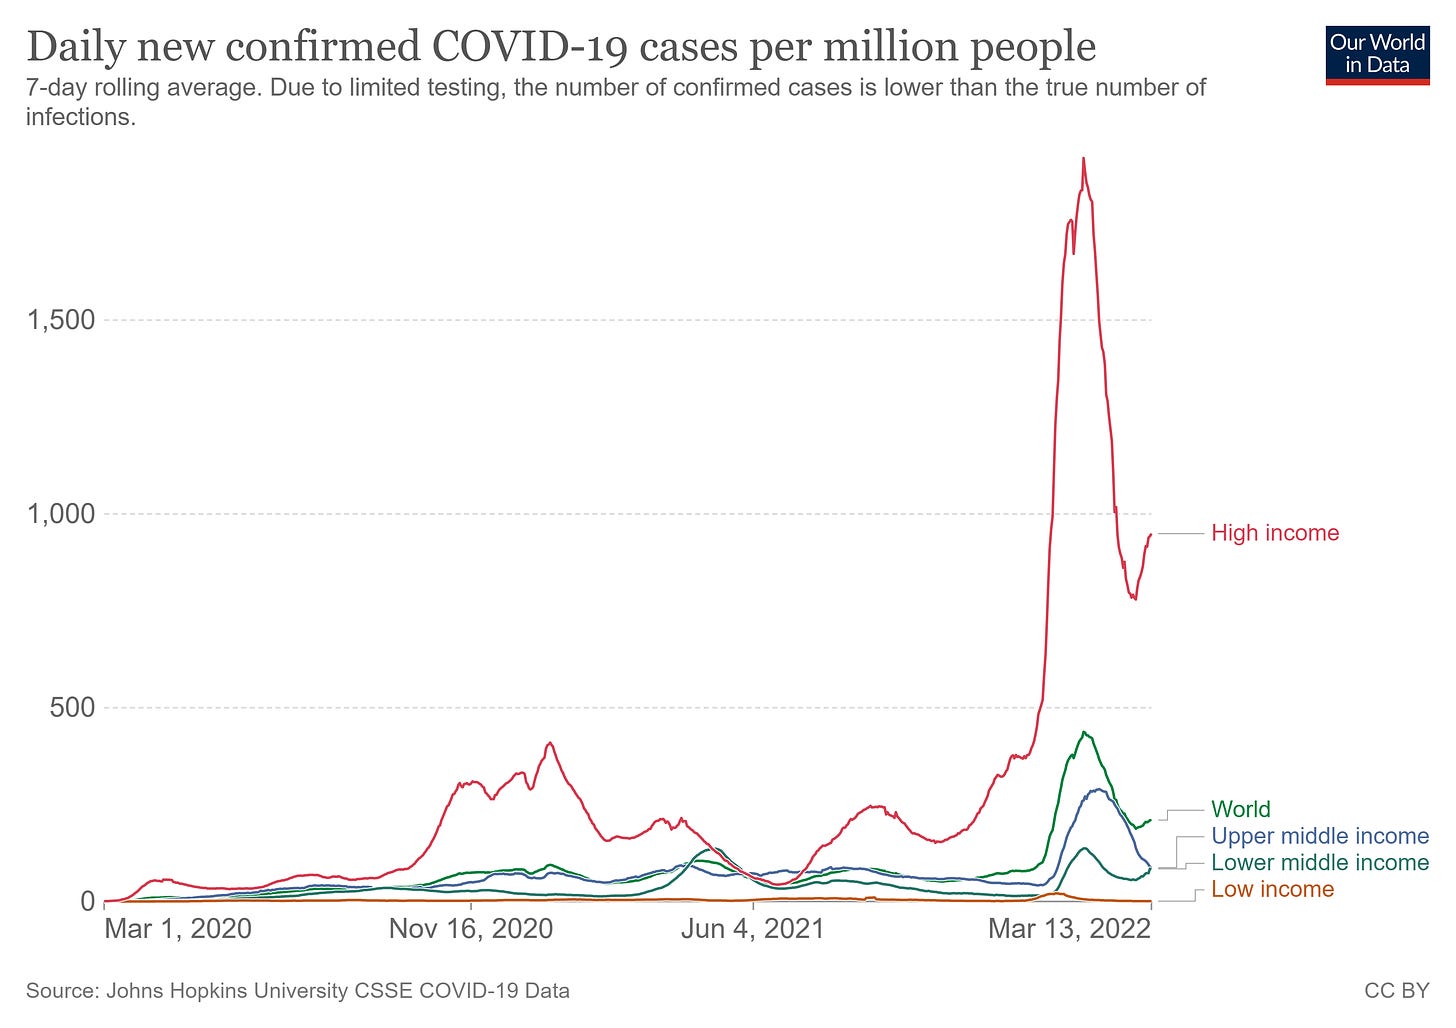 covid cases per million people, covid-19 cases per million people, covid cases by income group